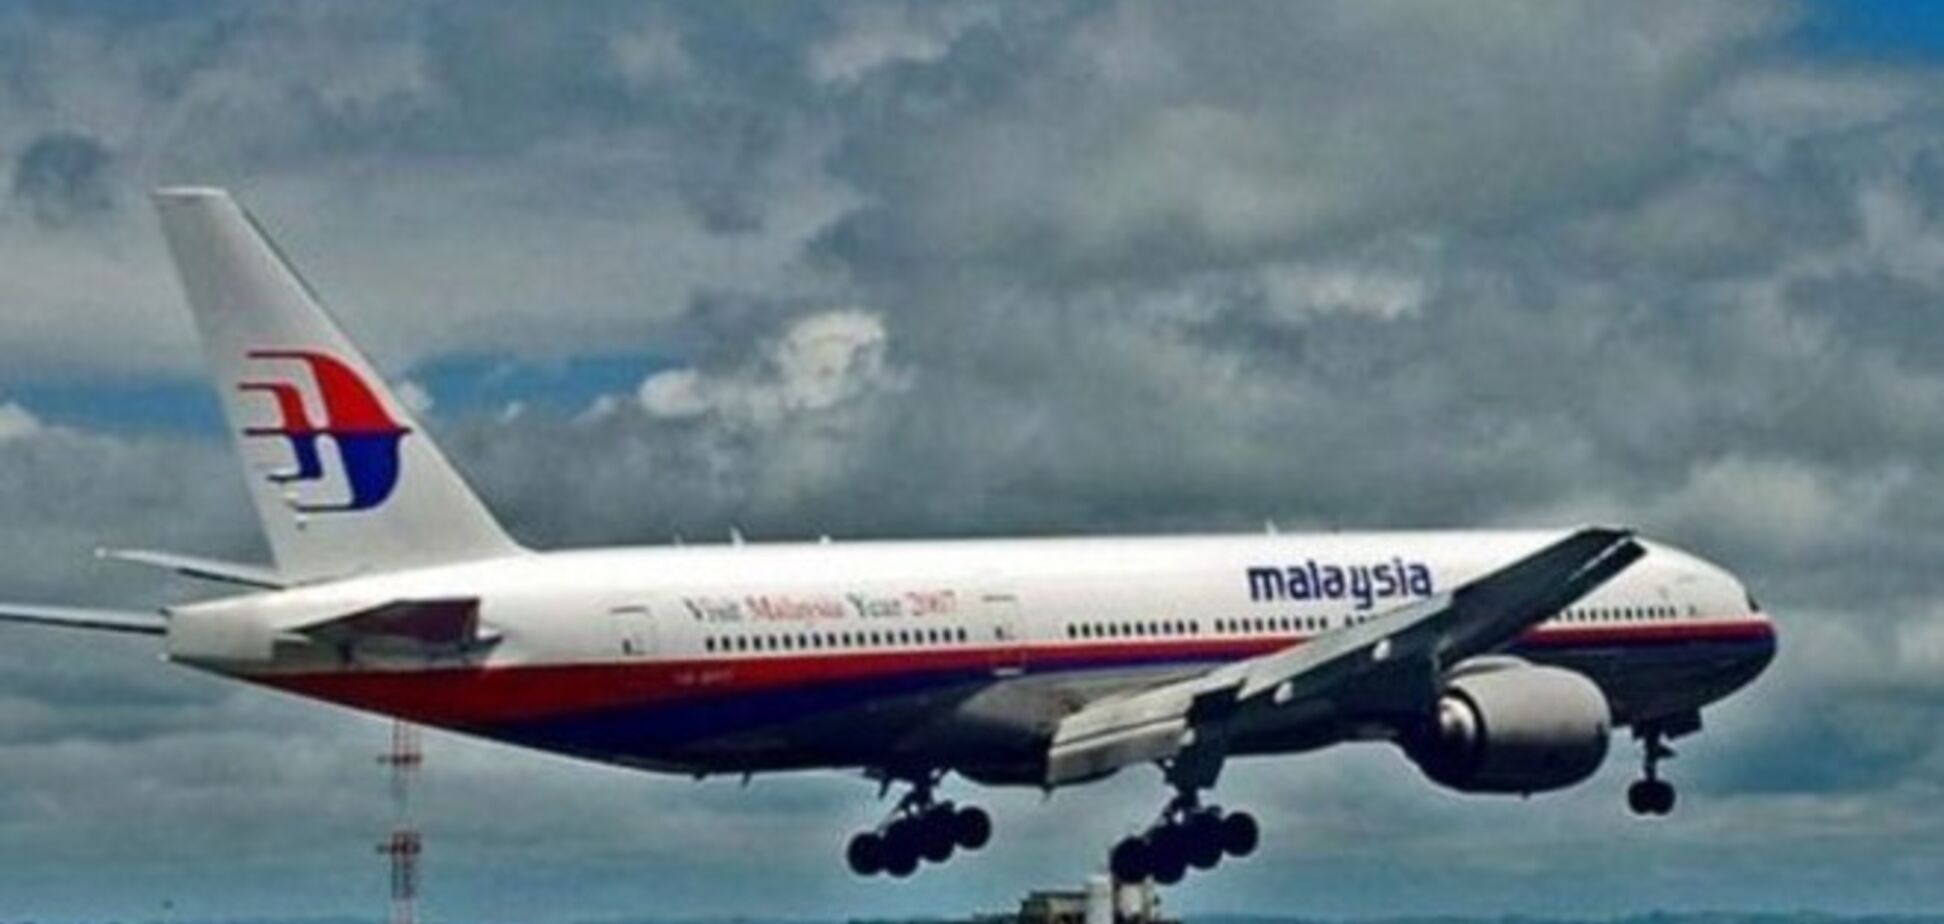 Стало известно содержание последних SMS с борта погибшего Boeing-777